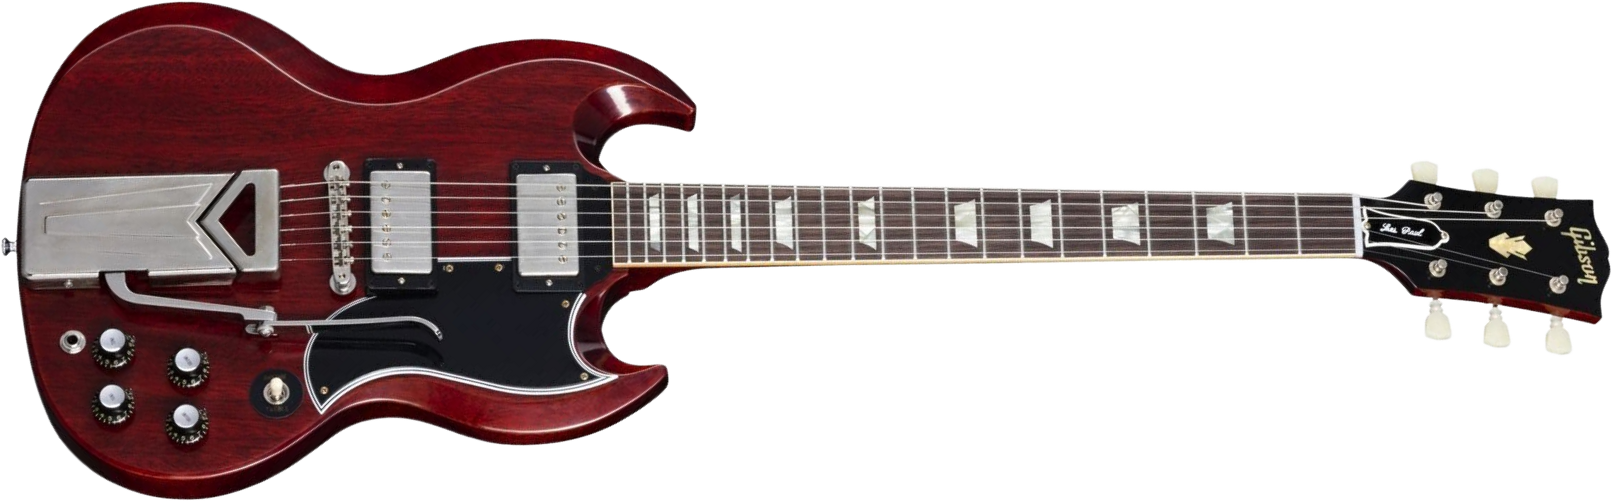 Gibson Sg Les Paul 1961 60th Ann. 2h Trem Rw - Vos Cherry Red - Guitarra eléctrica de doble corte - Main picture